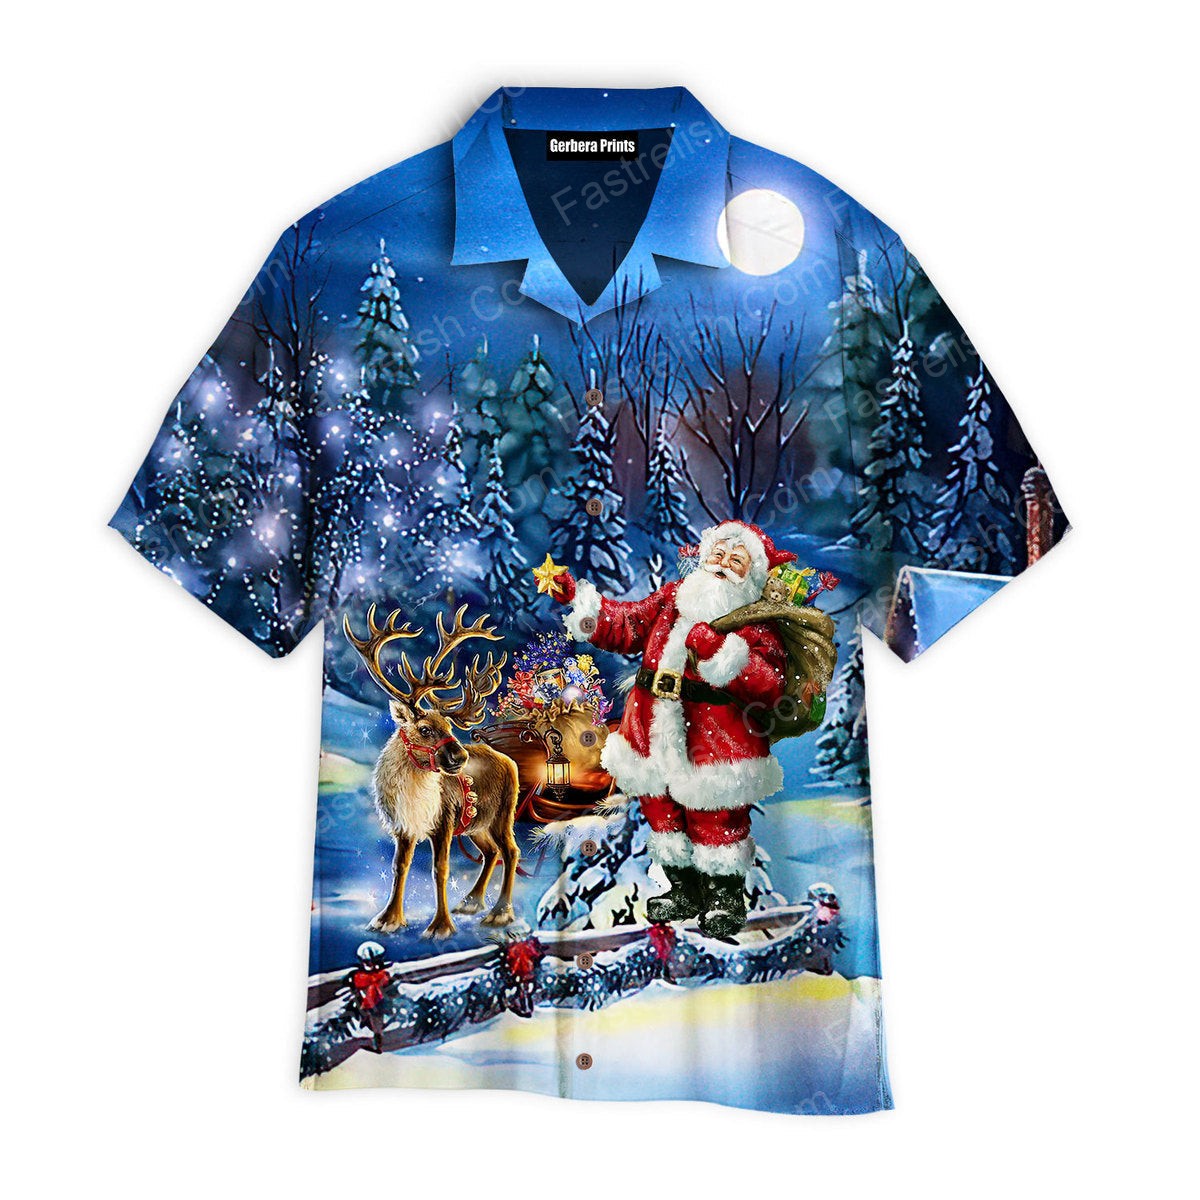 Santa Claus Is Coming With You Hawaiian Shirts WT7370